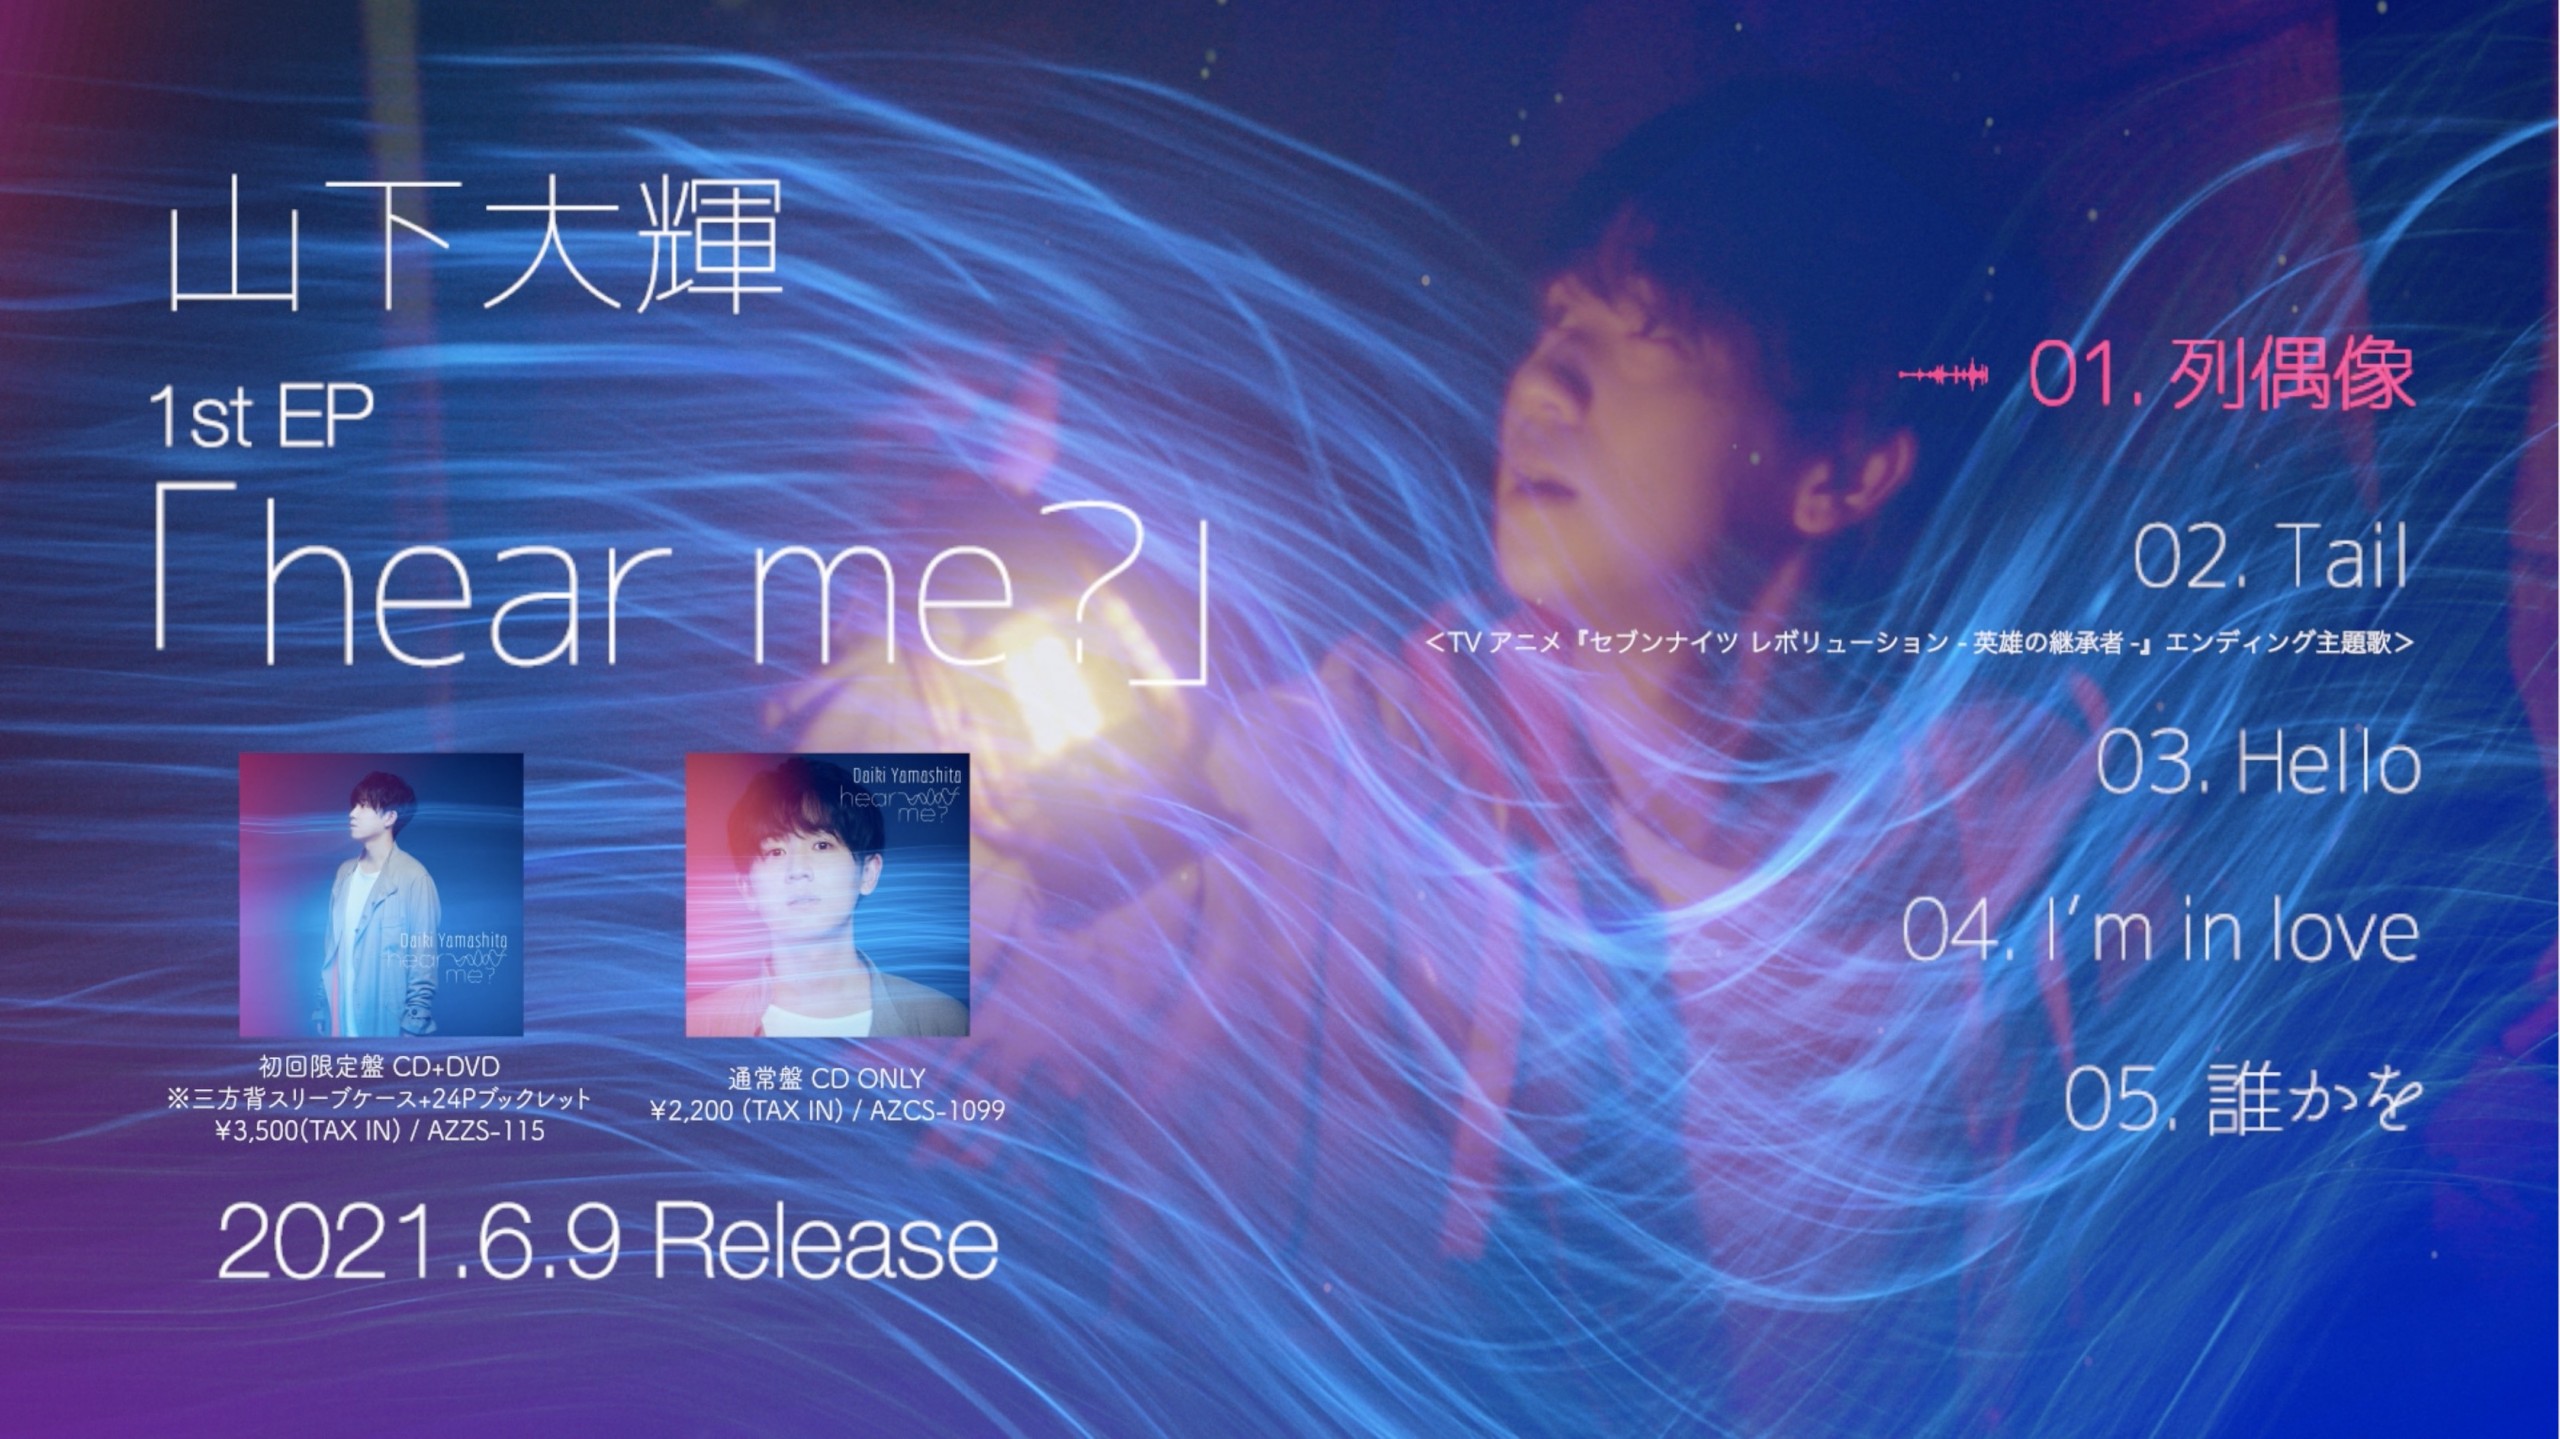 山下大輝 1st EP「hear me?」Trailer